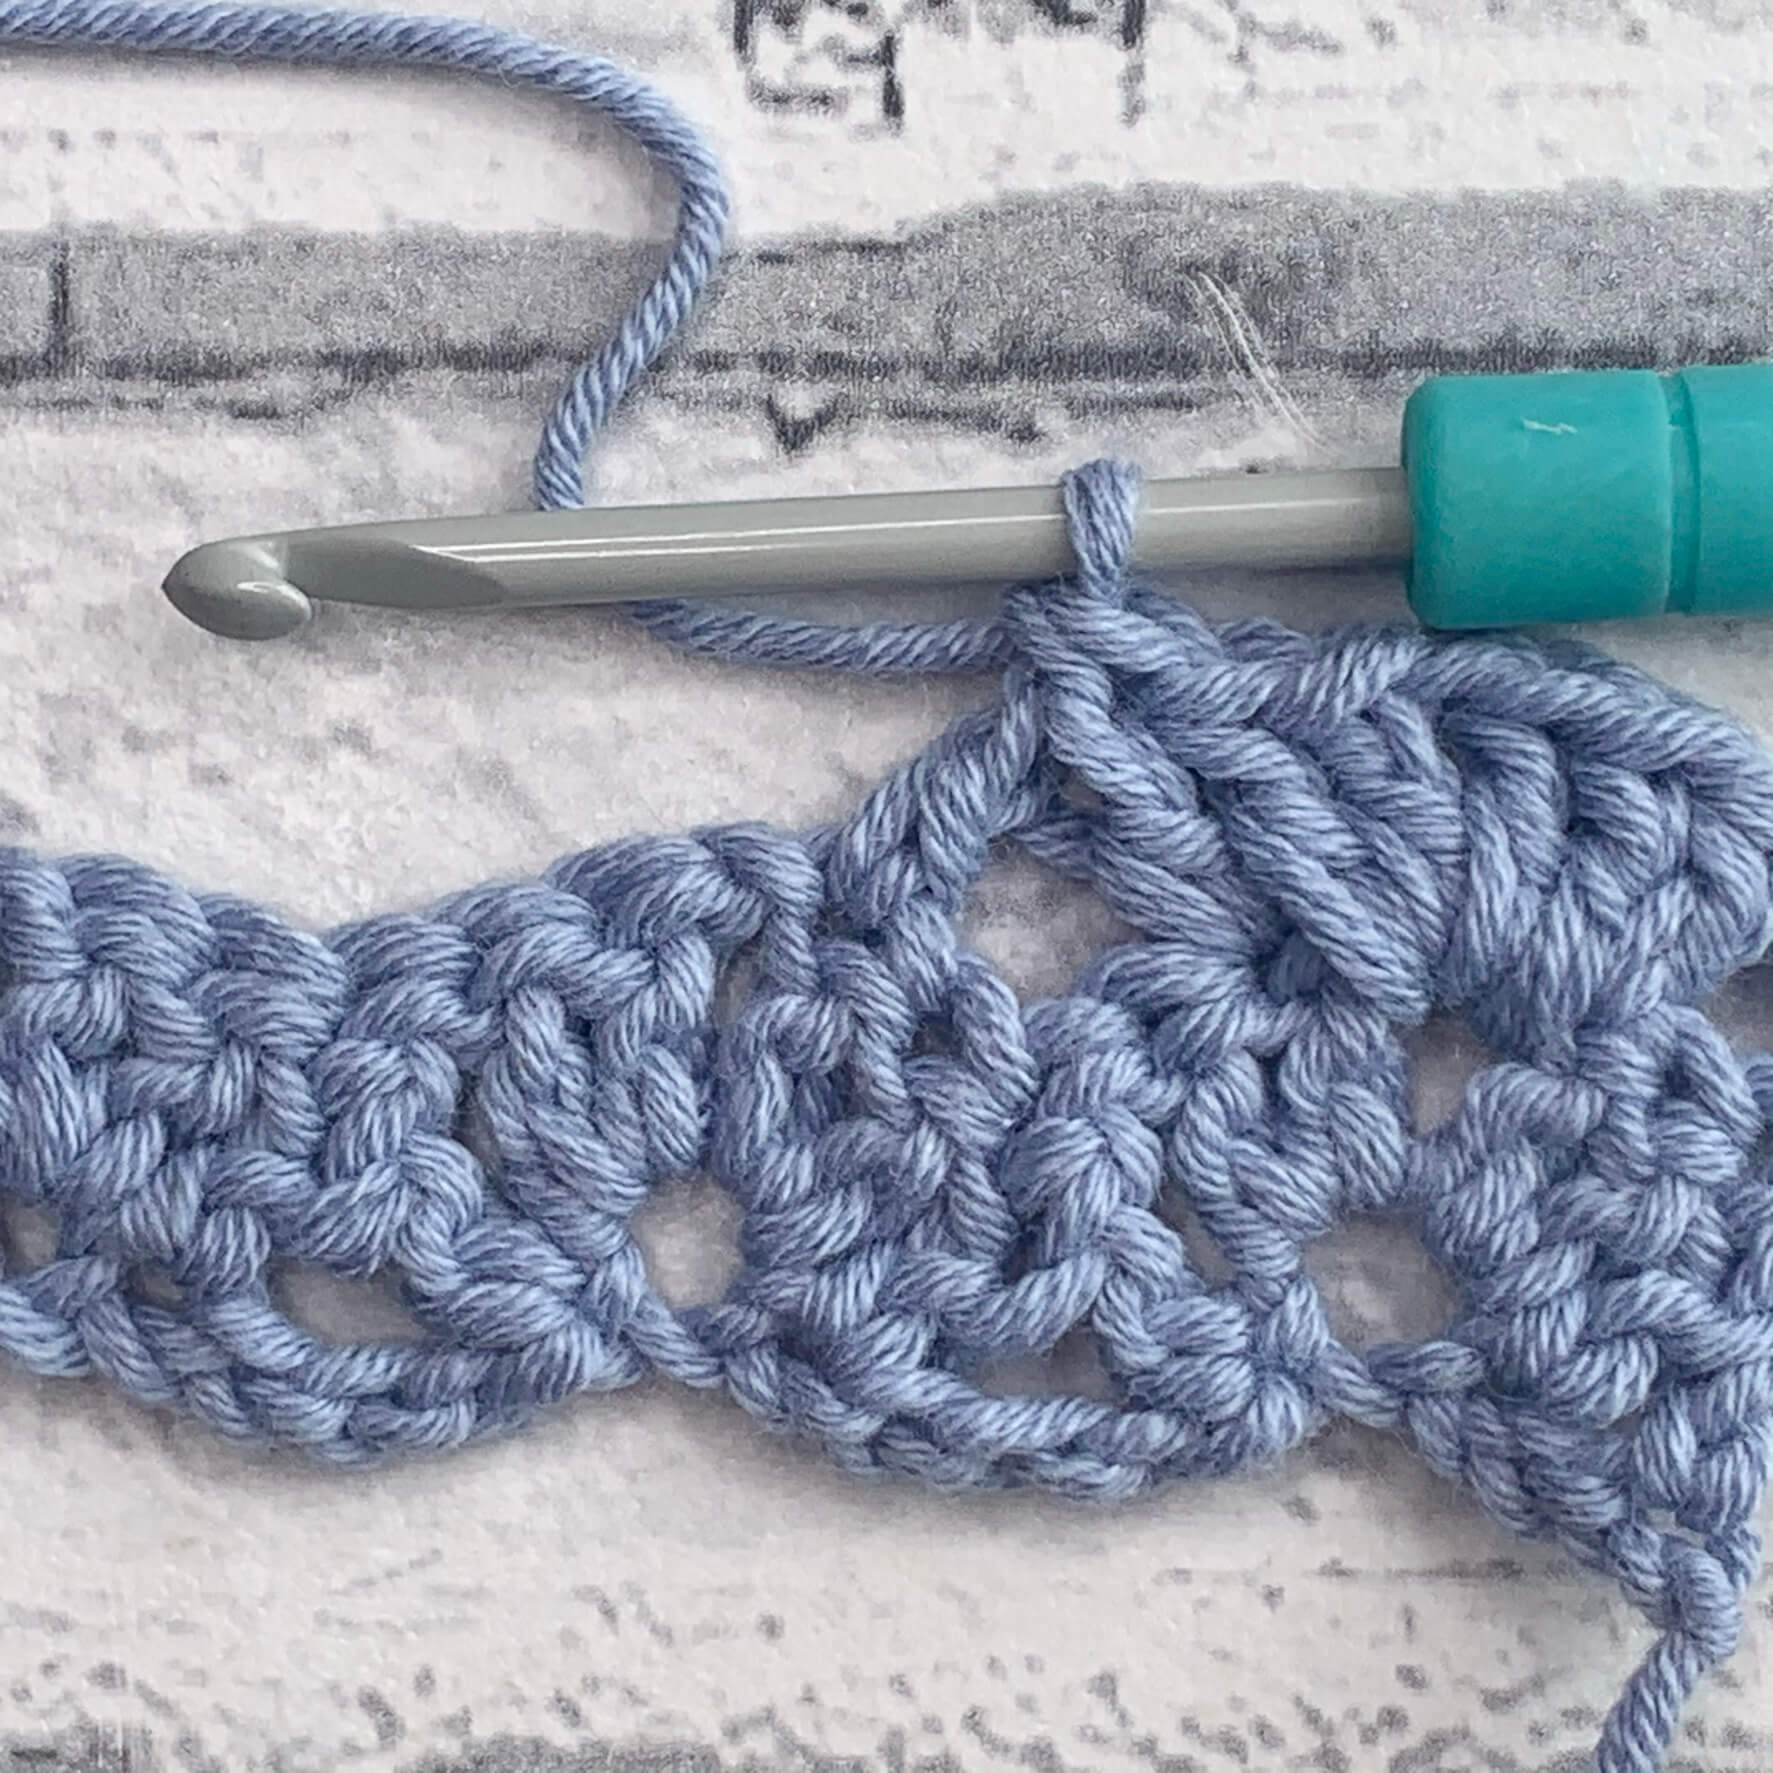 Open Scallop crochet pattern